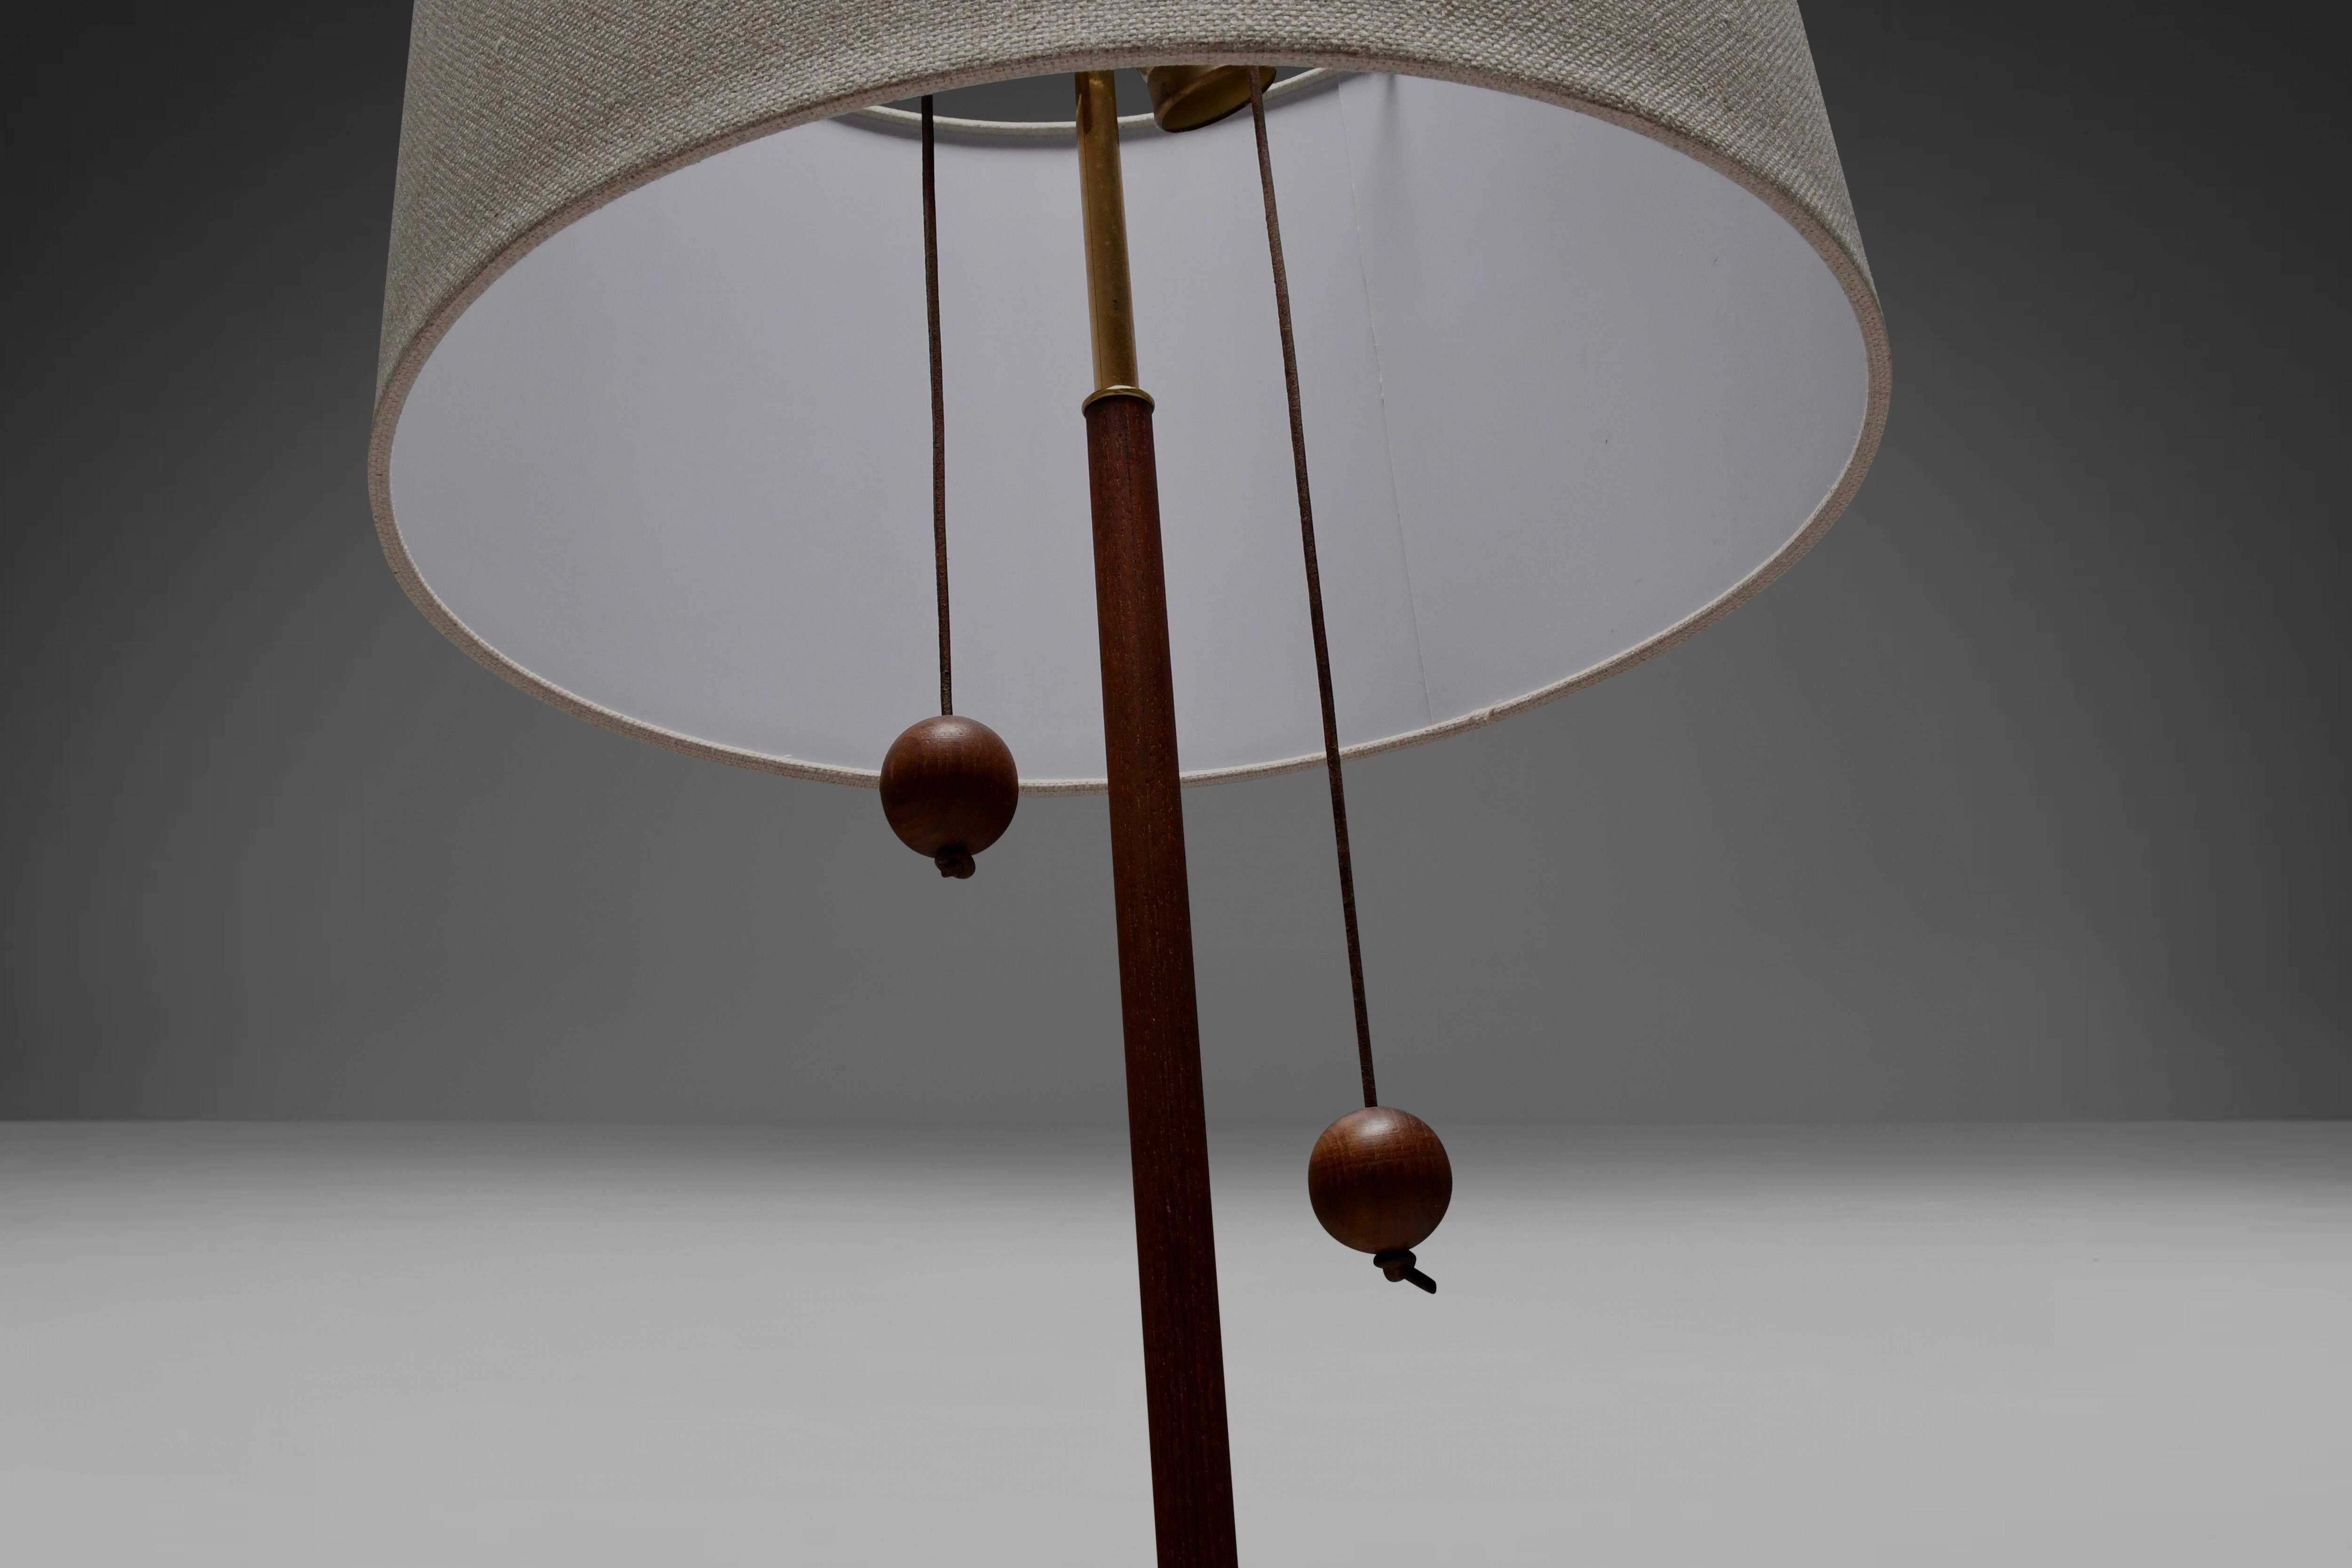 Tripod Floor Lamp by Fog & Mørup made of Teak and Brass, Denmark 1960s For Sale 7